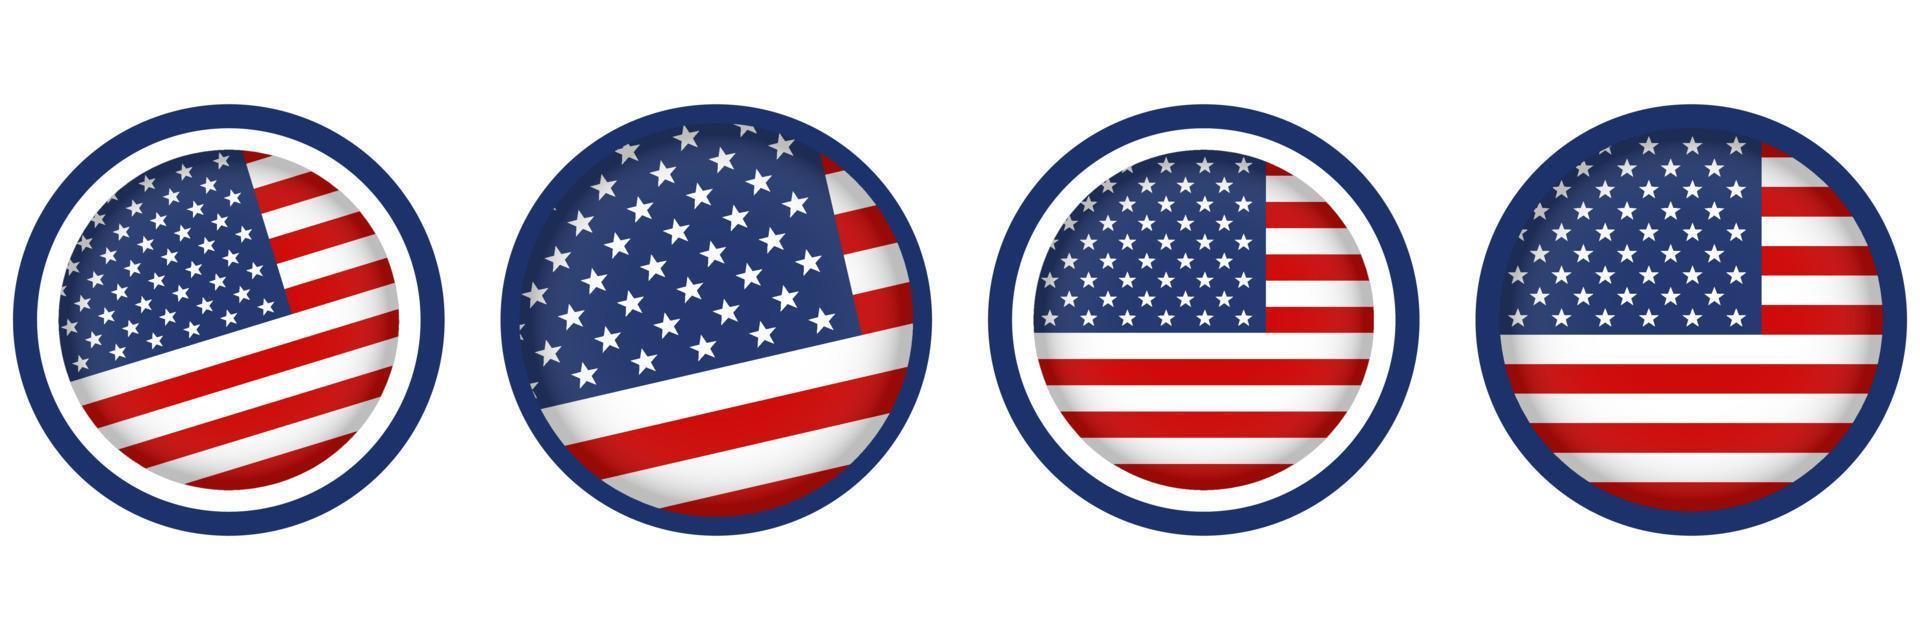 reeks van Verenigde Staten van Amerika vlaggen in modern cirkel stijl vector